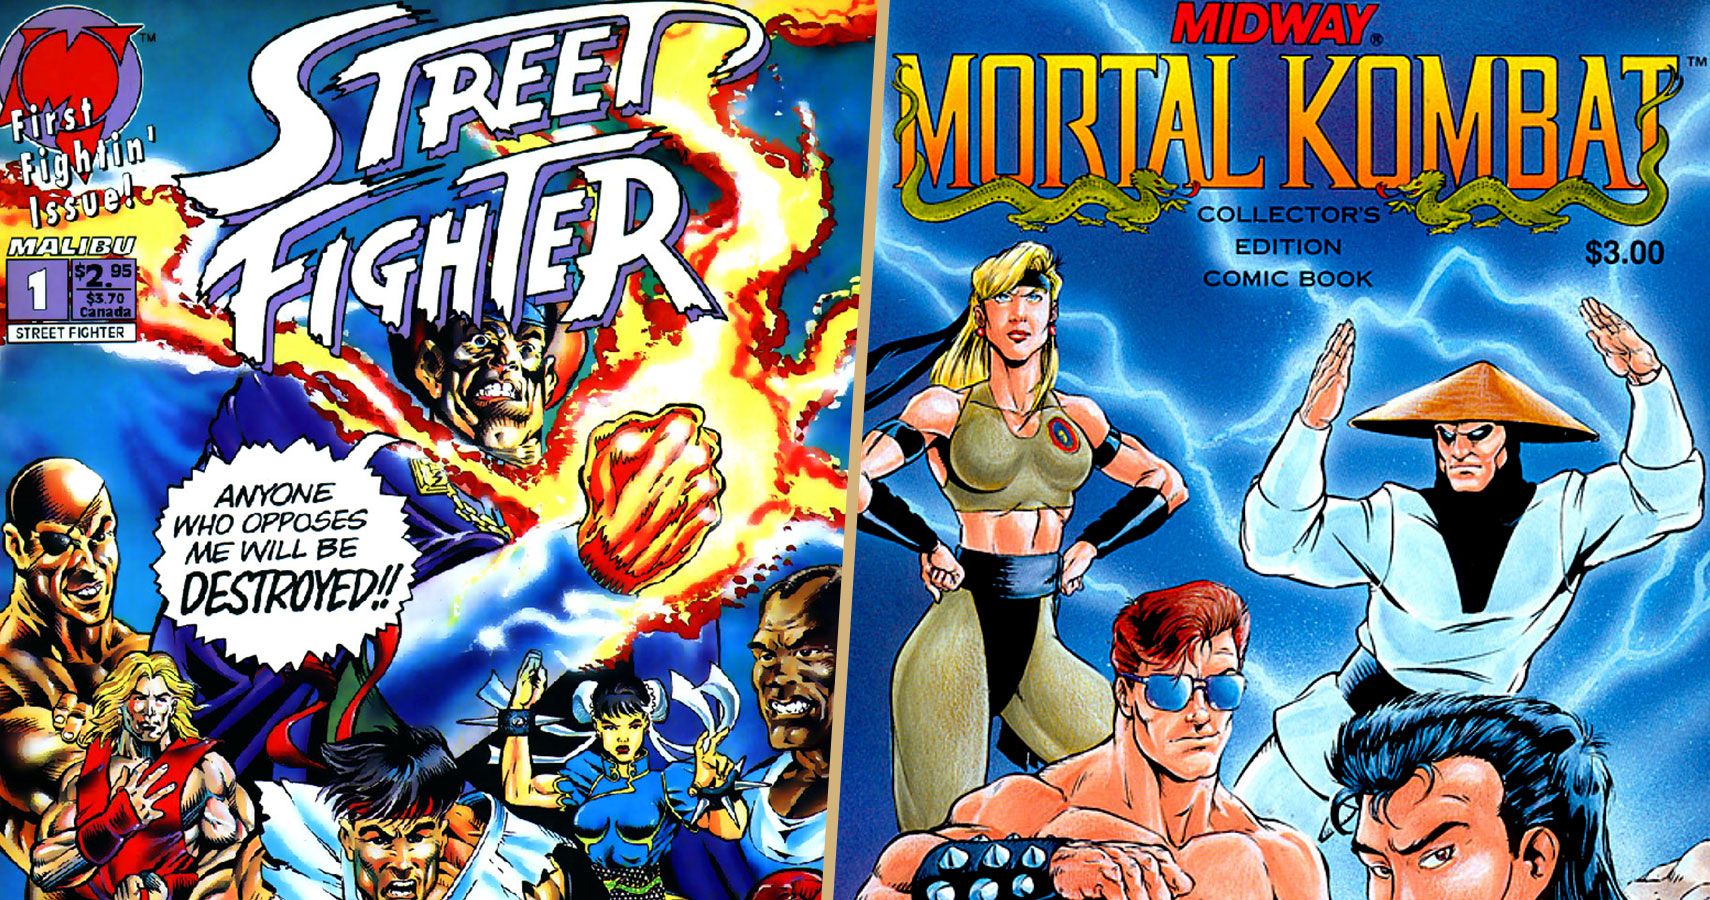 MK vs. SF Comics Feature